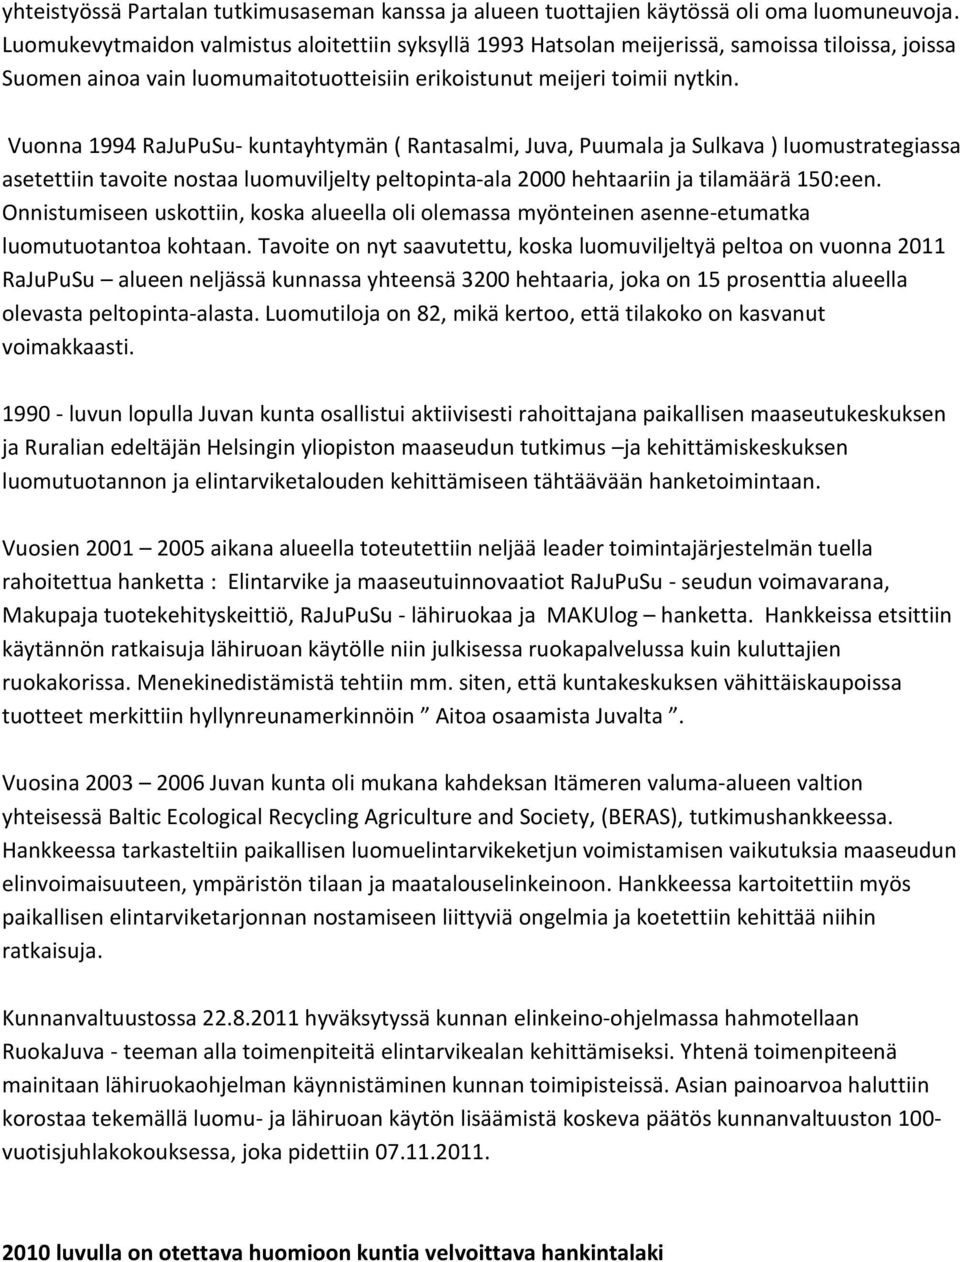 Vuonna 1994 RaJuPuSu- kuntayhtymän ( Rantasalmi, Juva, Puumala ja Sulkava ) luomustrategiassa asetettiin tavoite nostaa luomuviljelty peltopinta-ala 2000 hehtaariin ja tilamäärä 150:een.